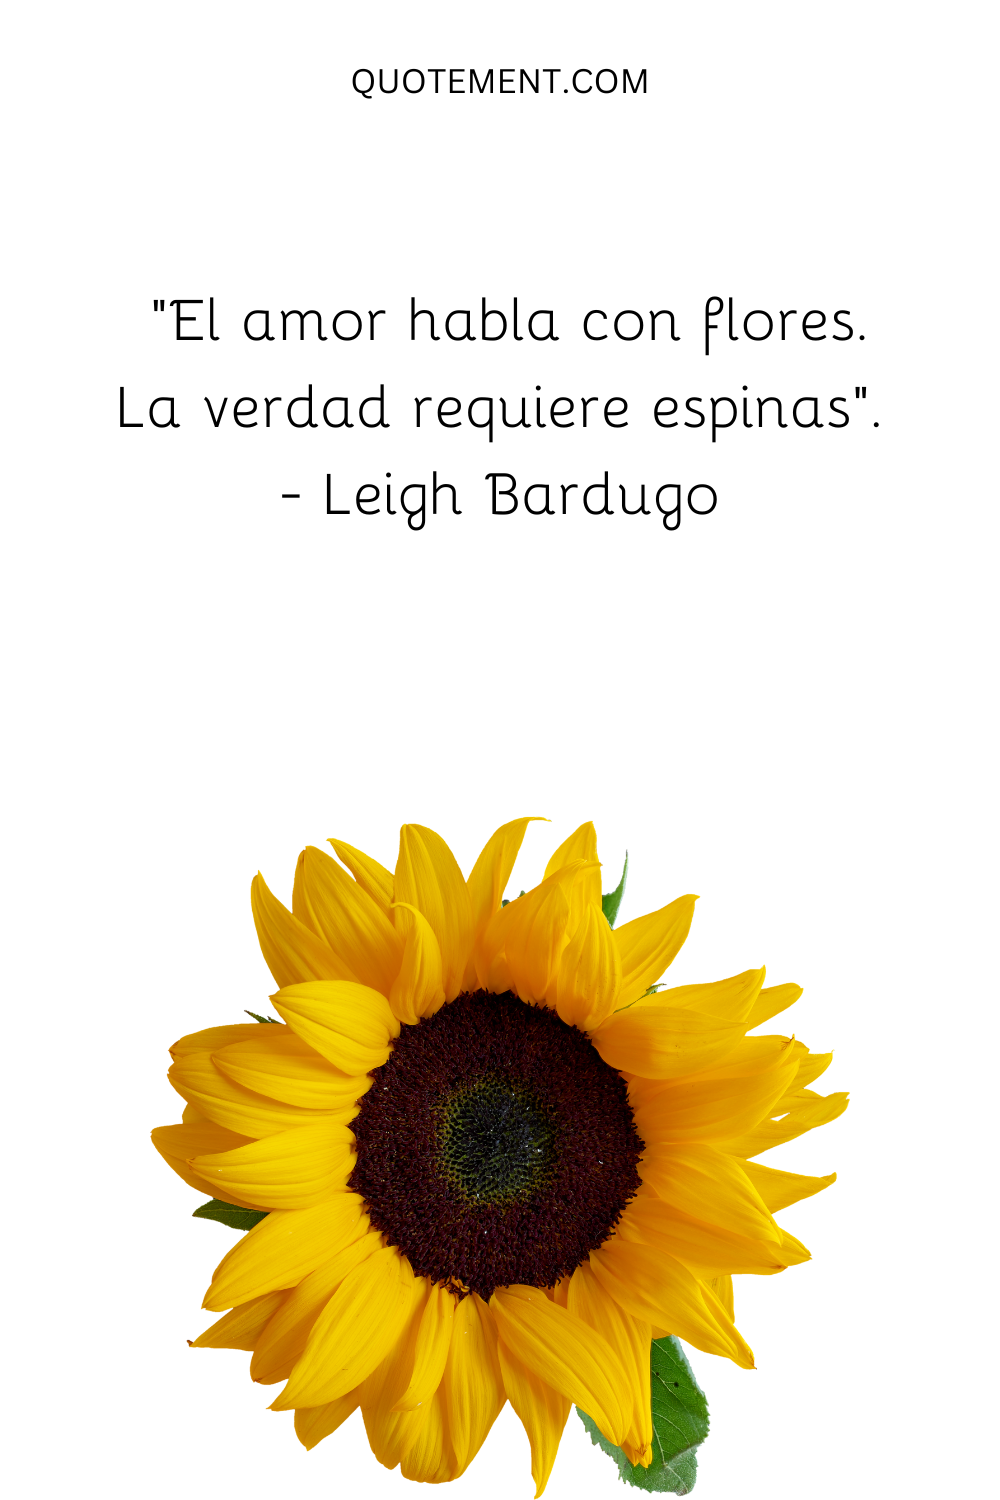 "El amor habla con flores. La verdad requiere espinas". - Leigh Bardugo